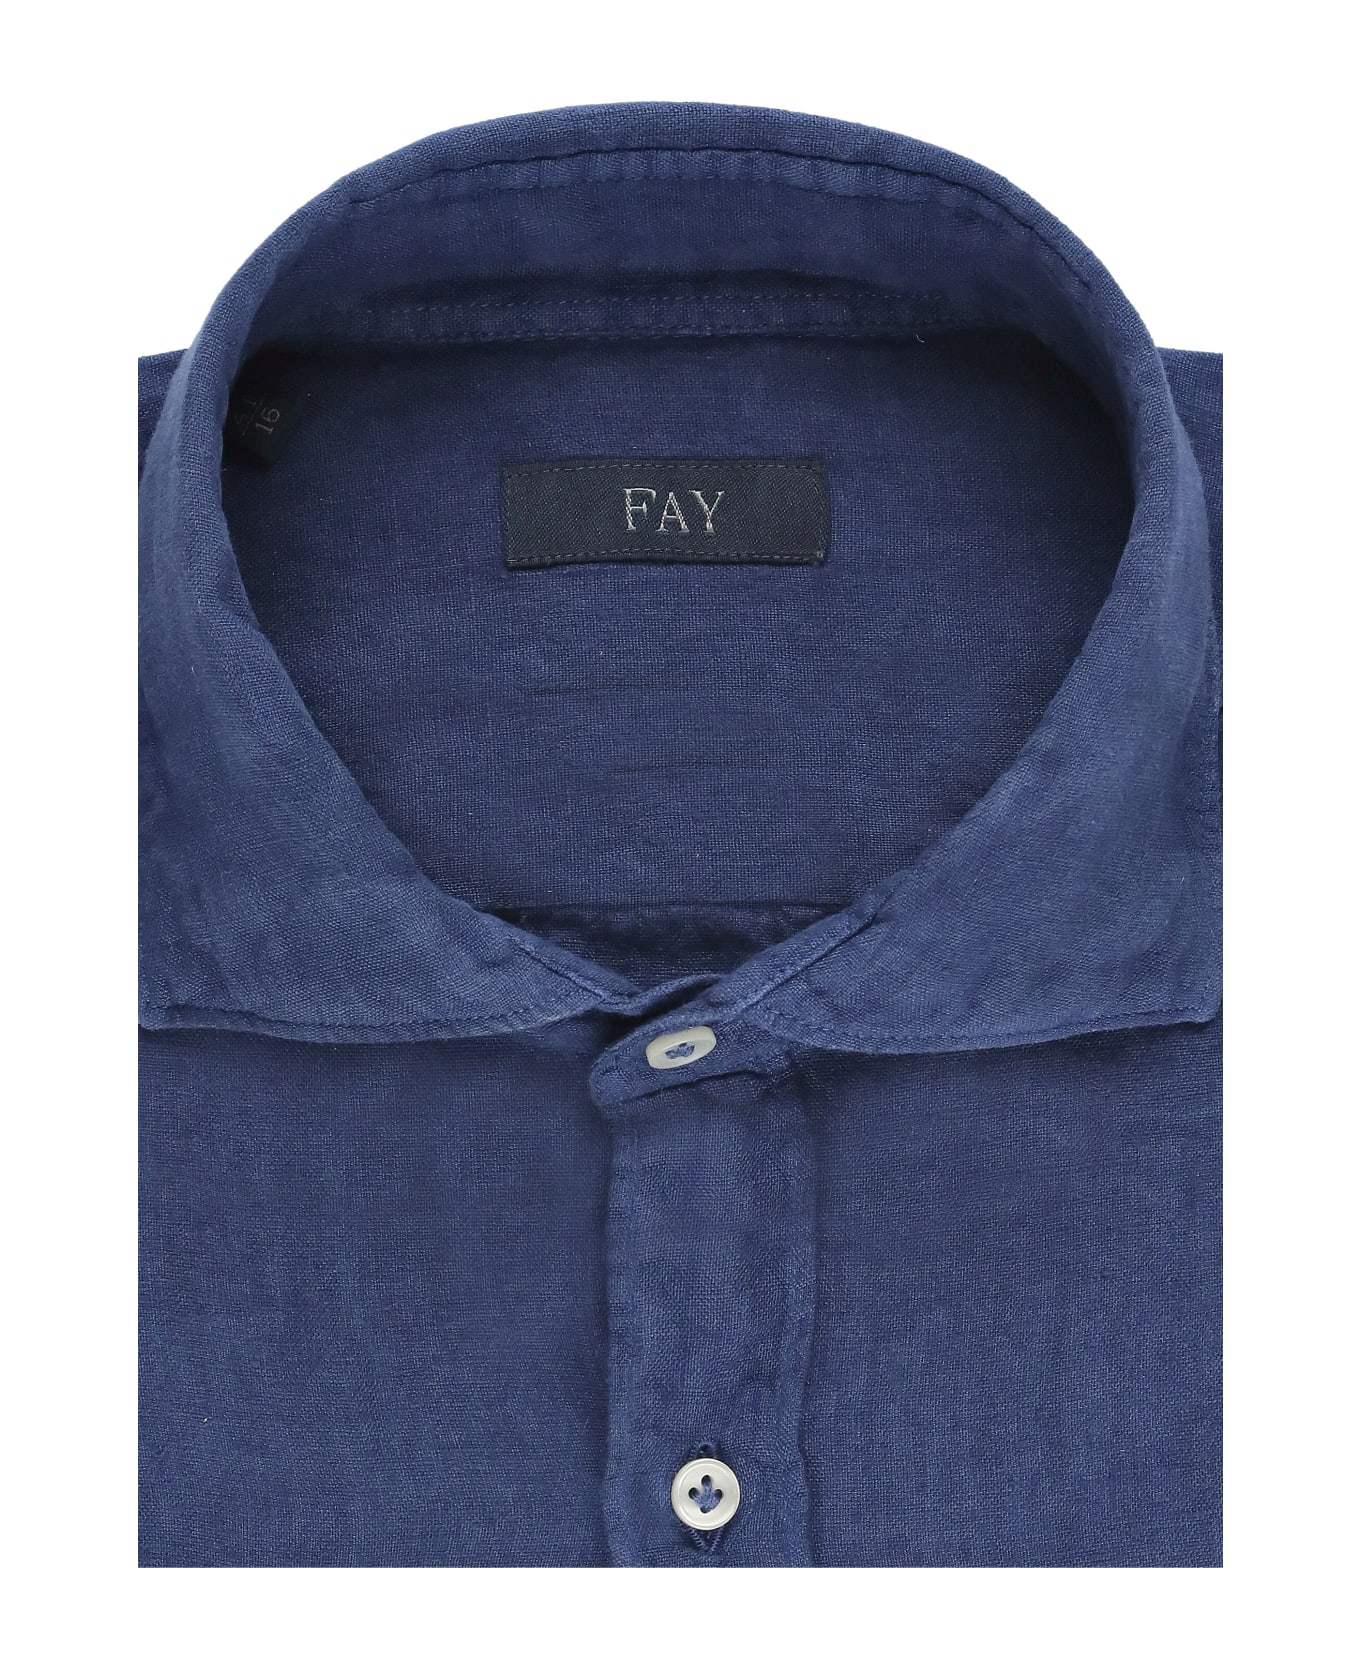 Fay Linen Shirt - Blue